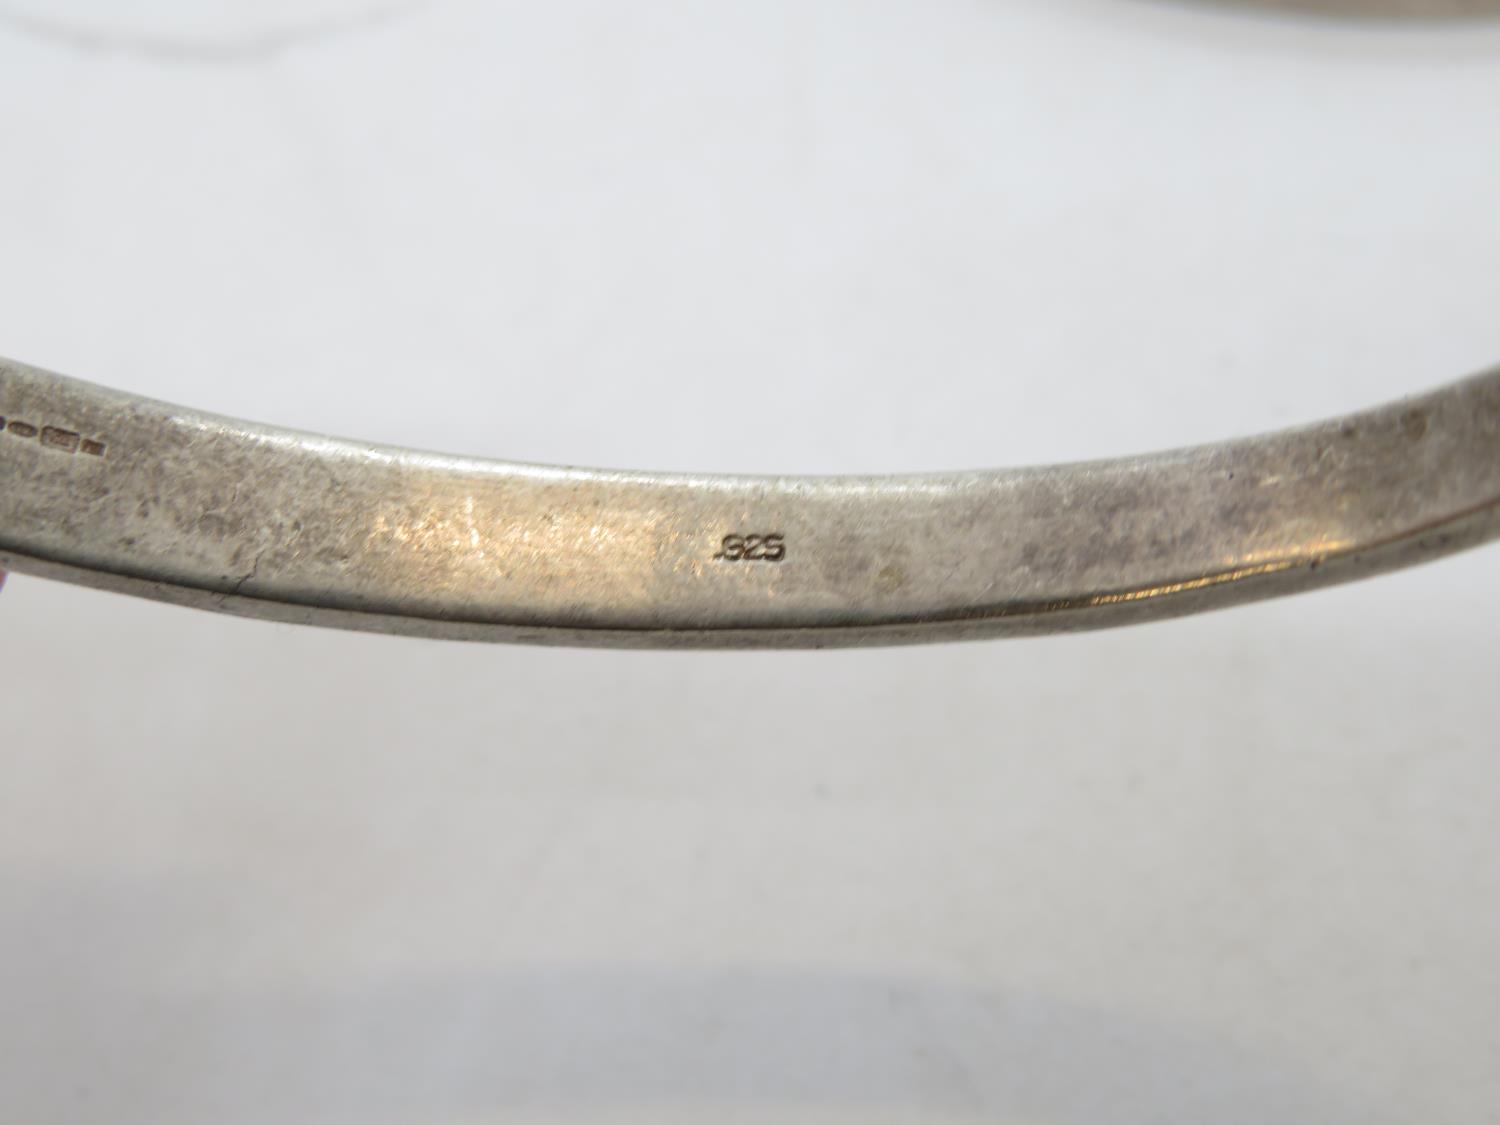 2x silver bracelets 58g - Image 2 of 2